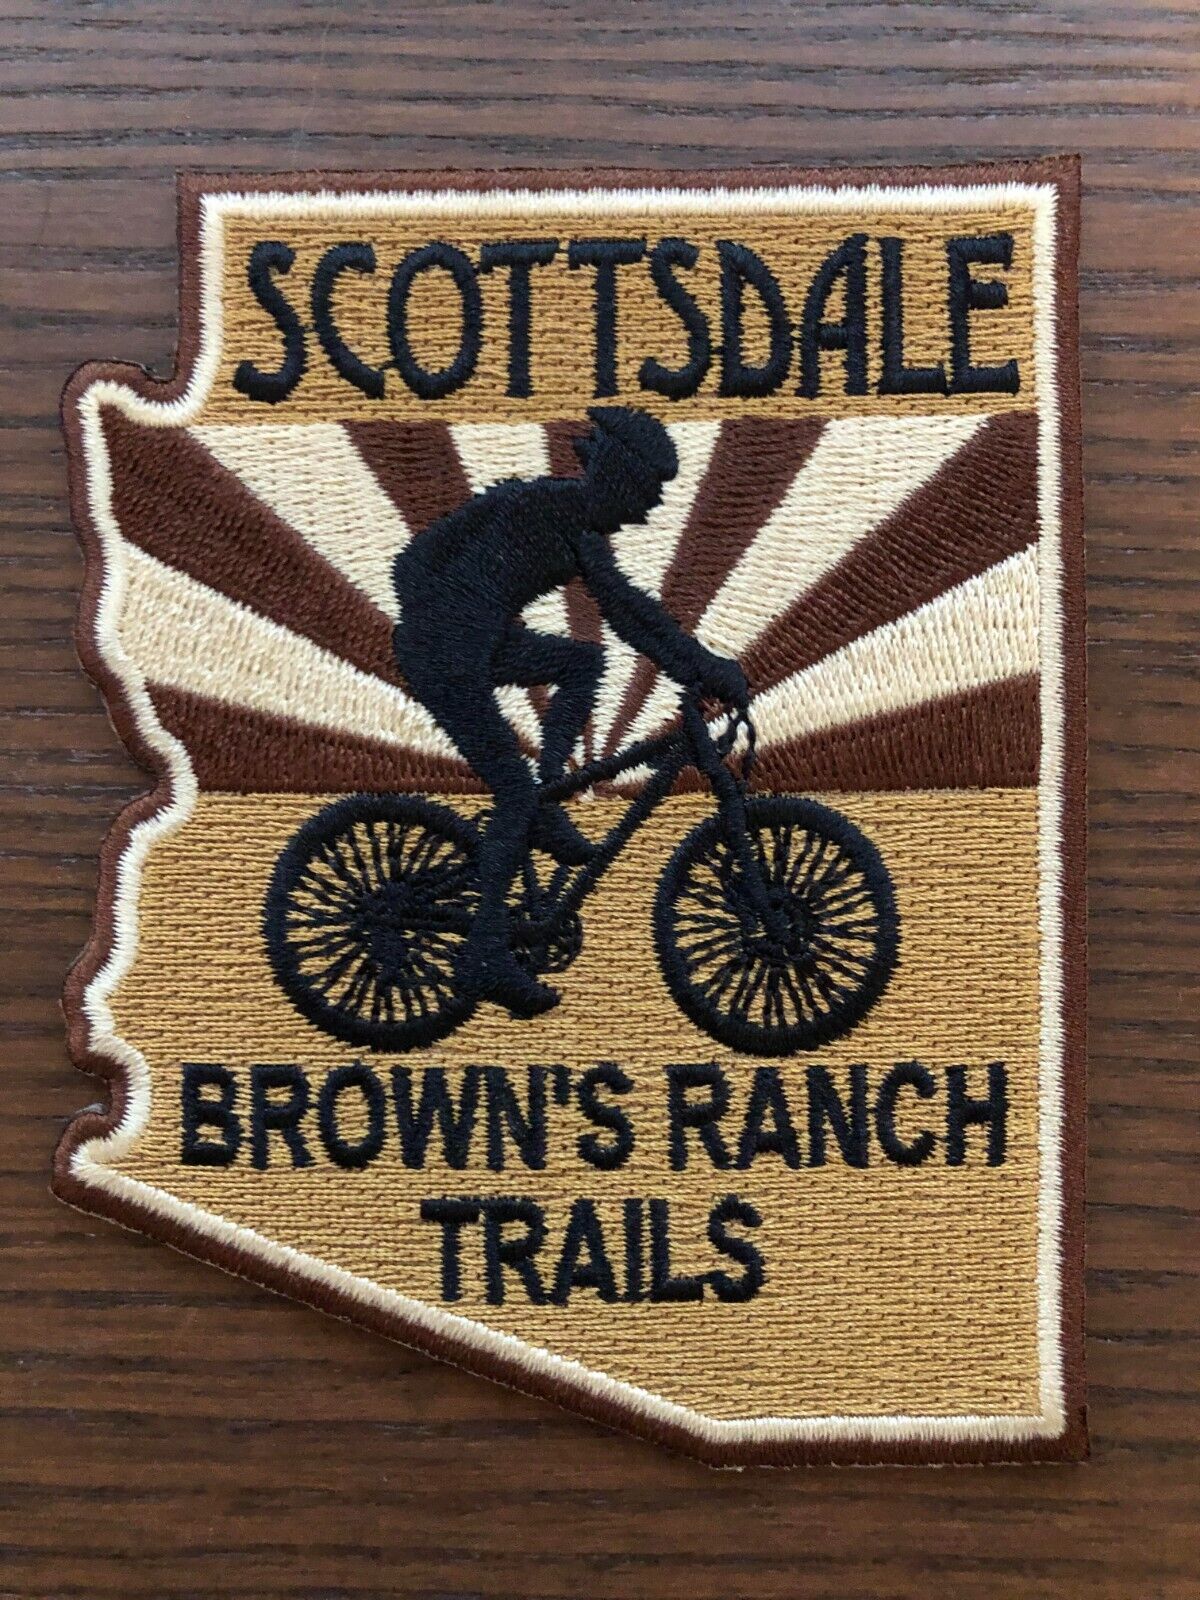 Scottsdale AZ, Brown\'s Ranch Mountain Bike Trails Patch